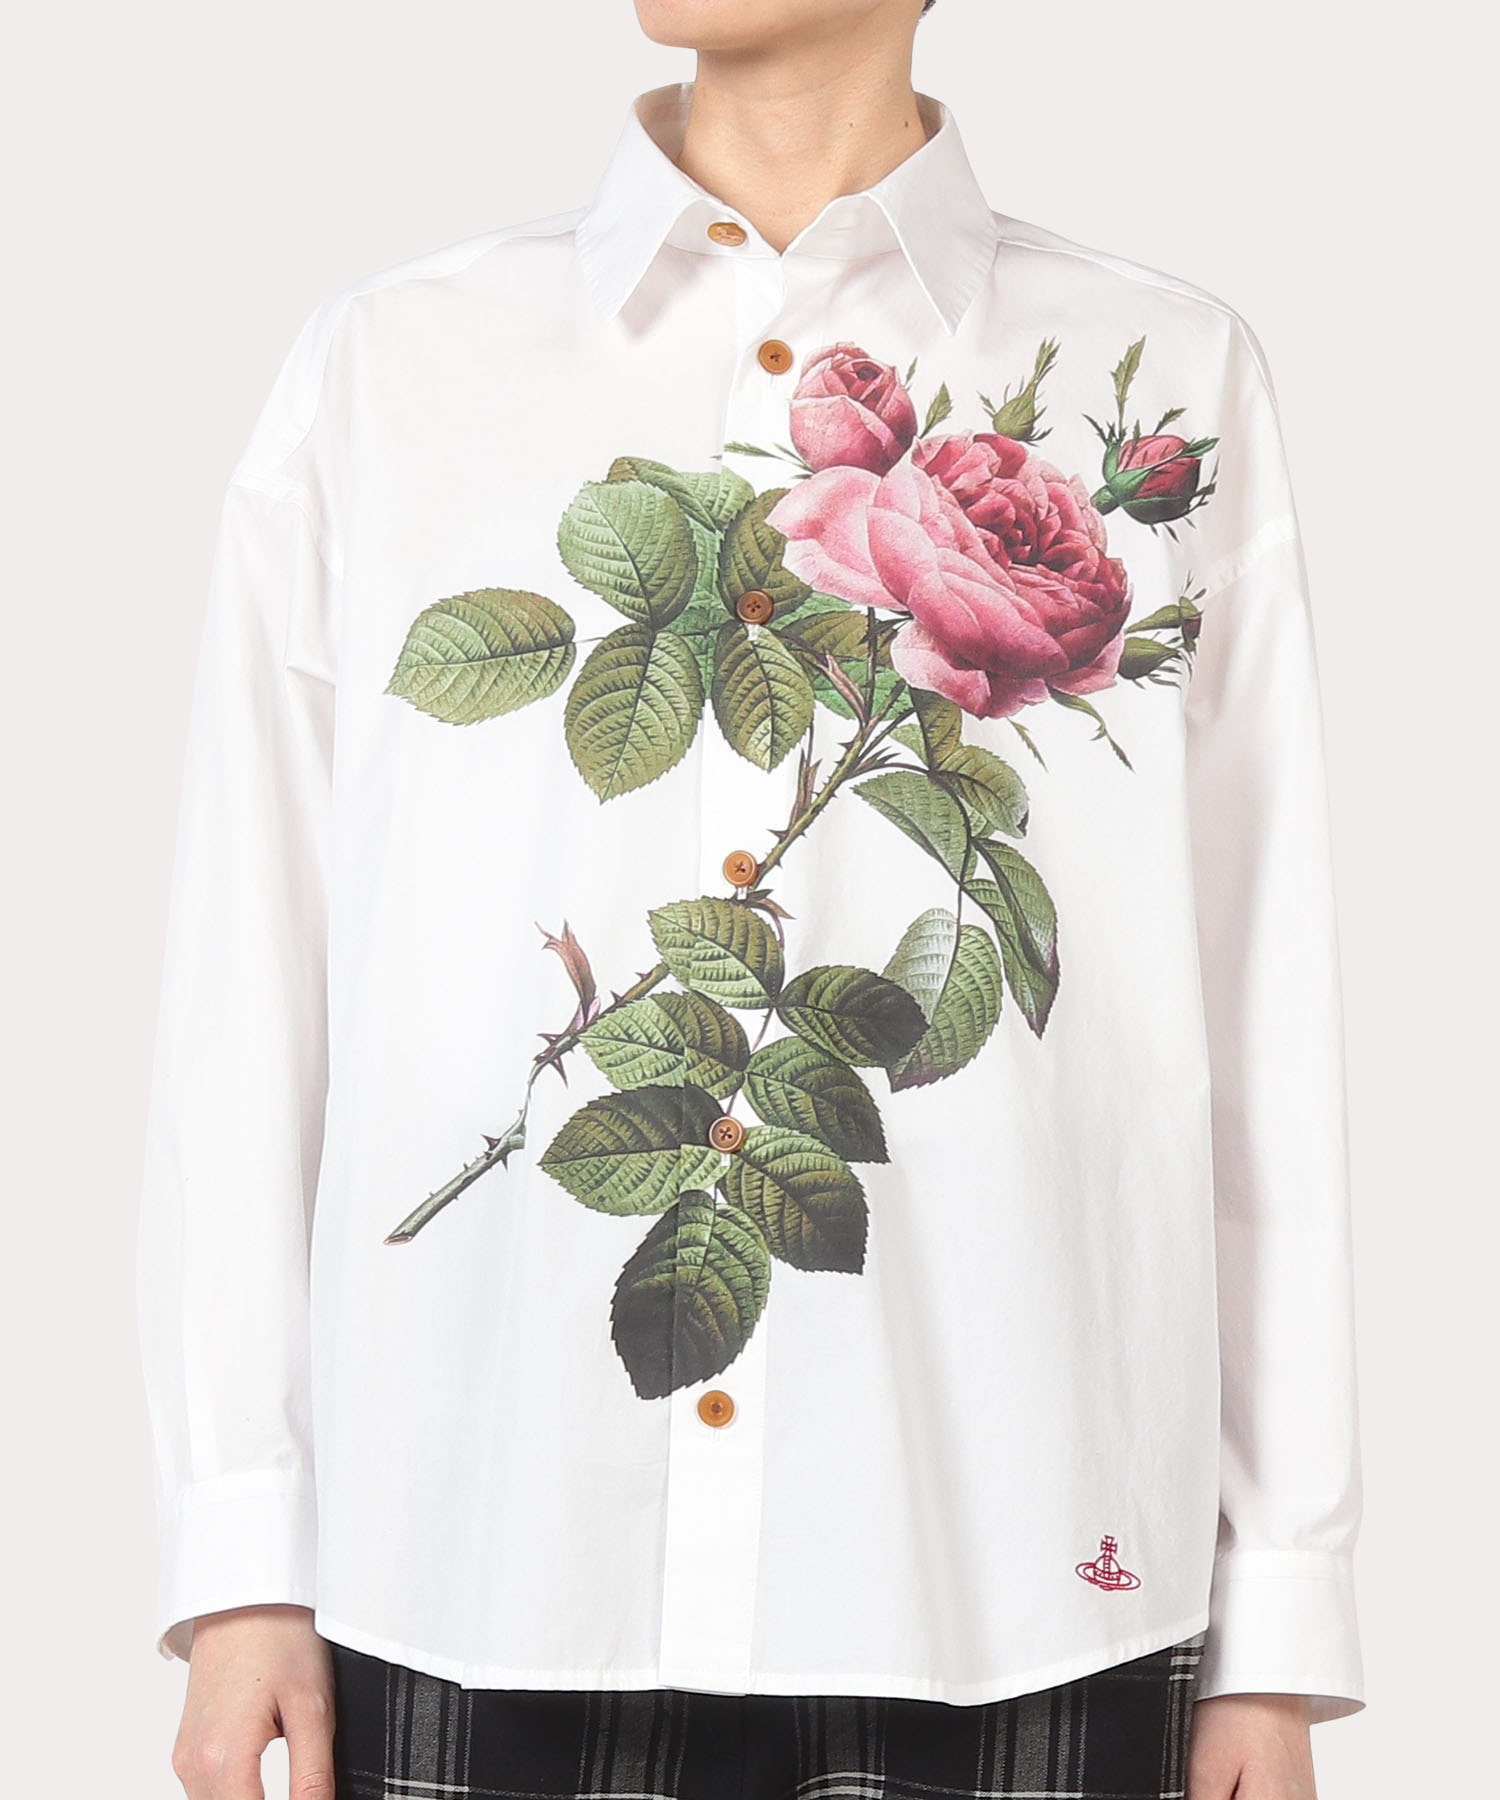 トップス【Vivienne Westwood MAN】REDOUTE ROSE シャツ